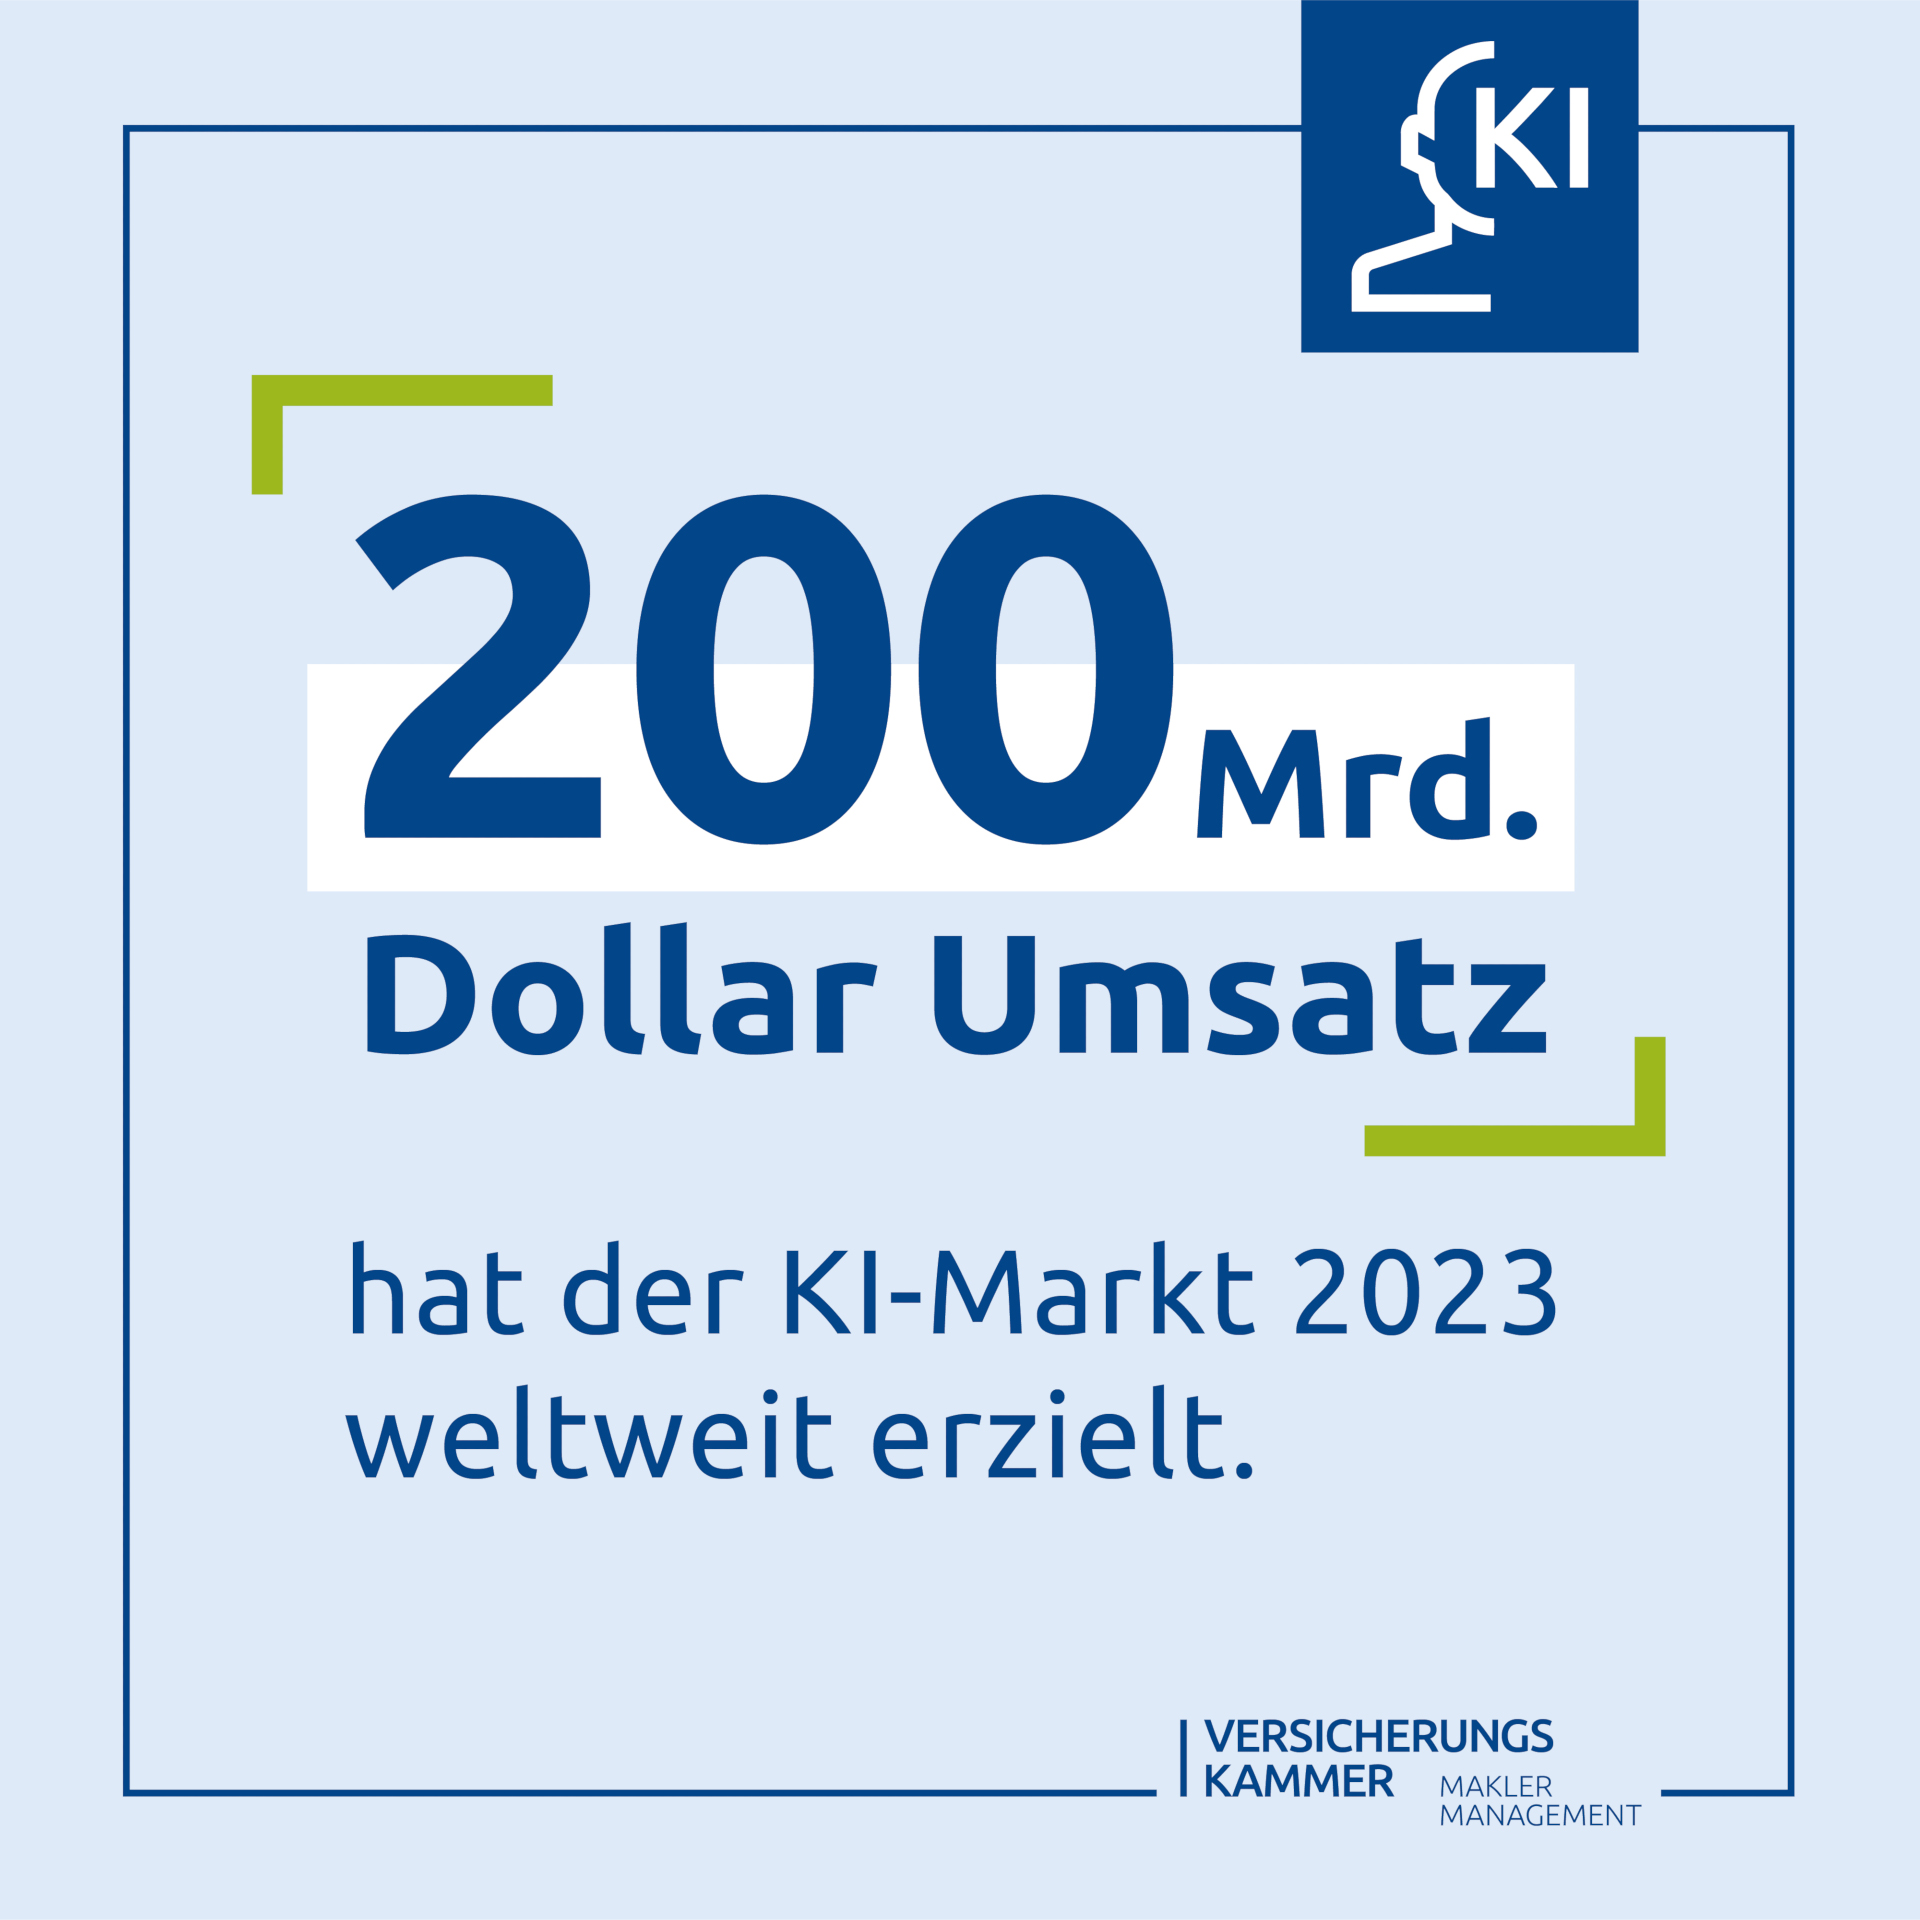 200 Mrd. Dollar Umsatz hat der KI Markt 2023 weltweit erziehlt.